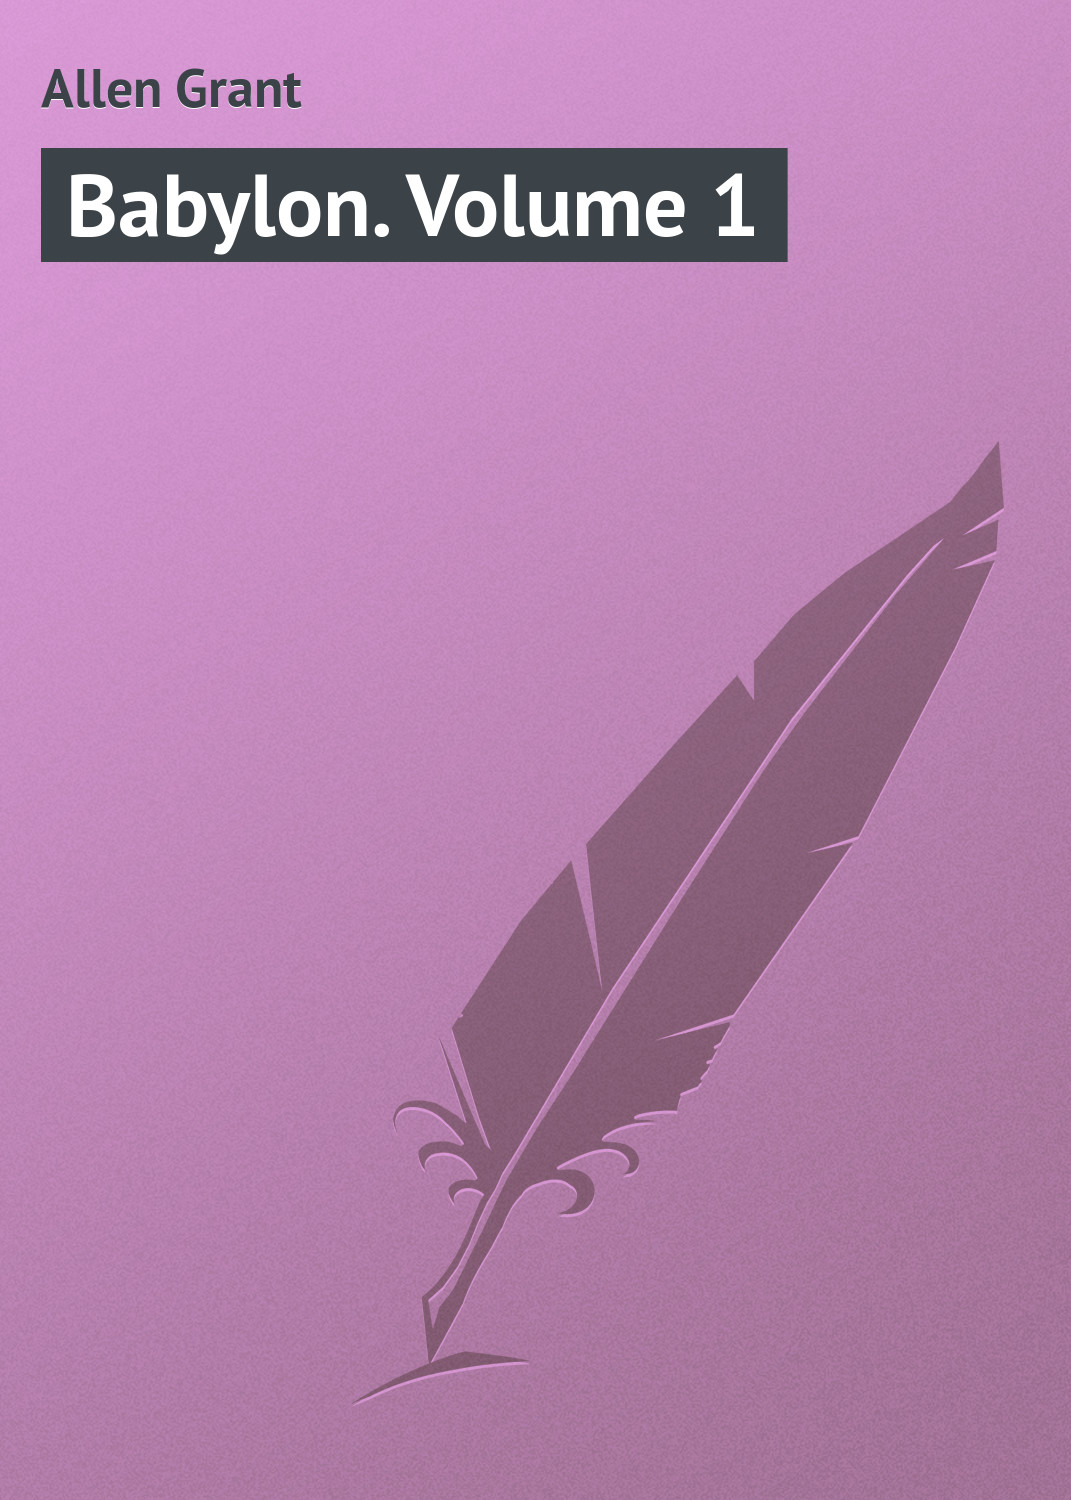 Книга Babylon. Volume 1 из серии , созданная Grant Allen, может относится к жанру Зарубежная классика. Стоимость электронной книги Babylon. Volume 1 с идентификатором 23164755 составляет 5.99 руб.